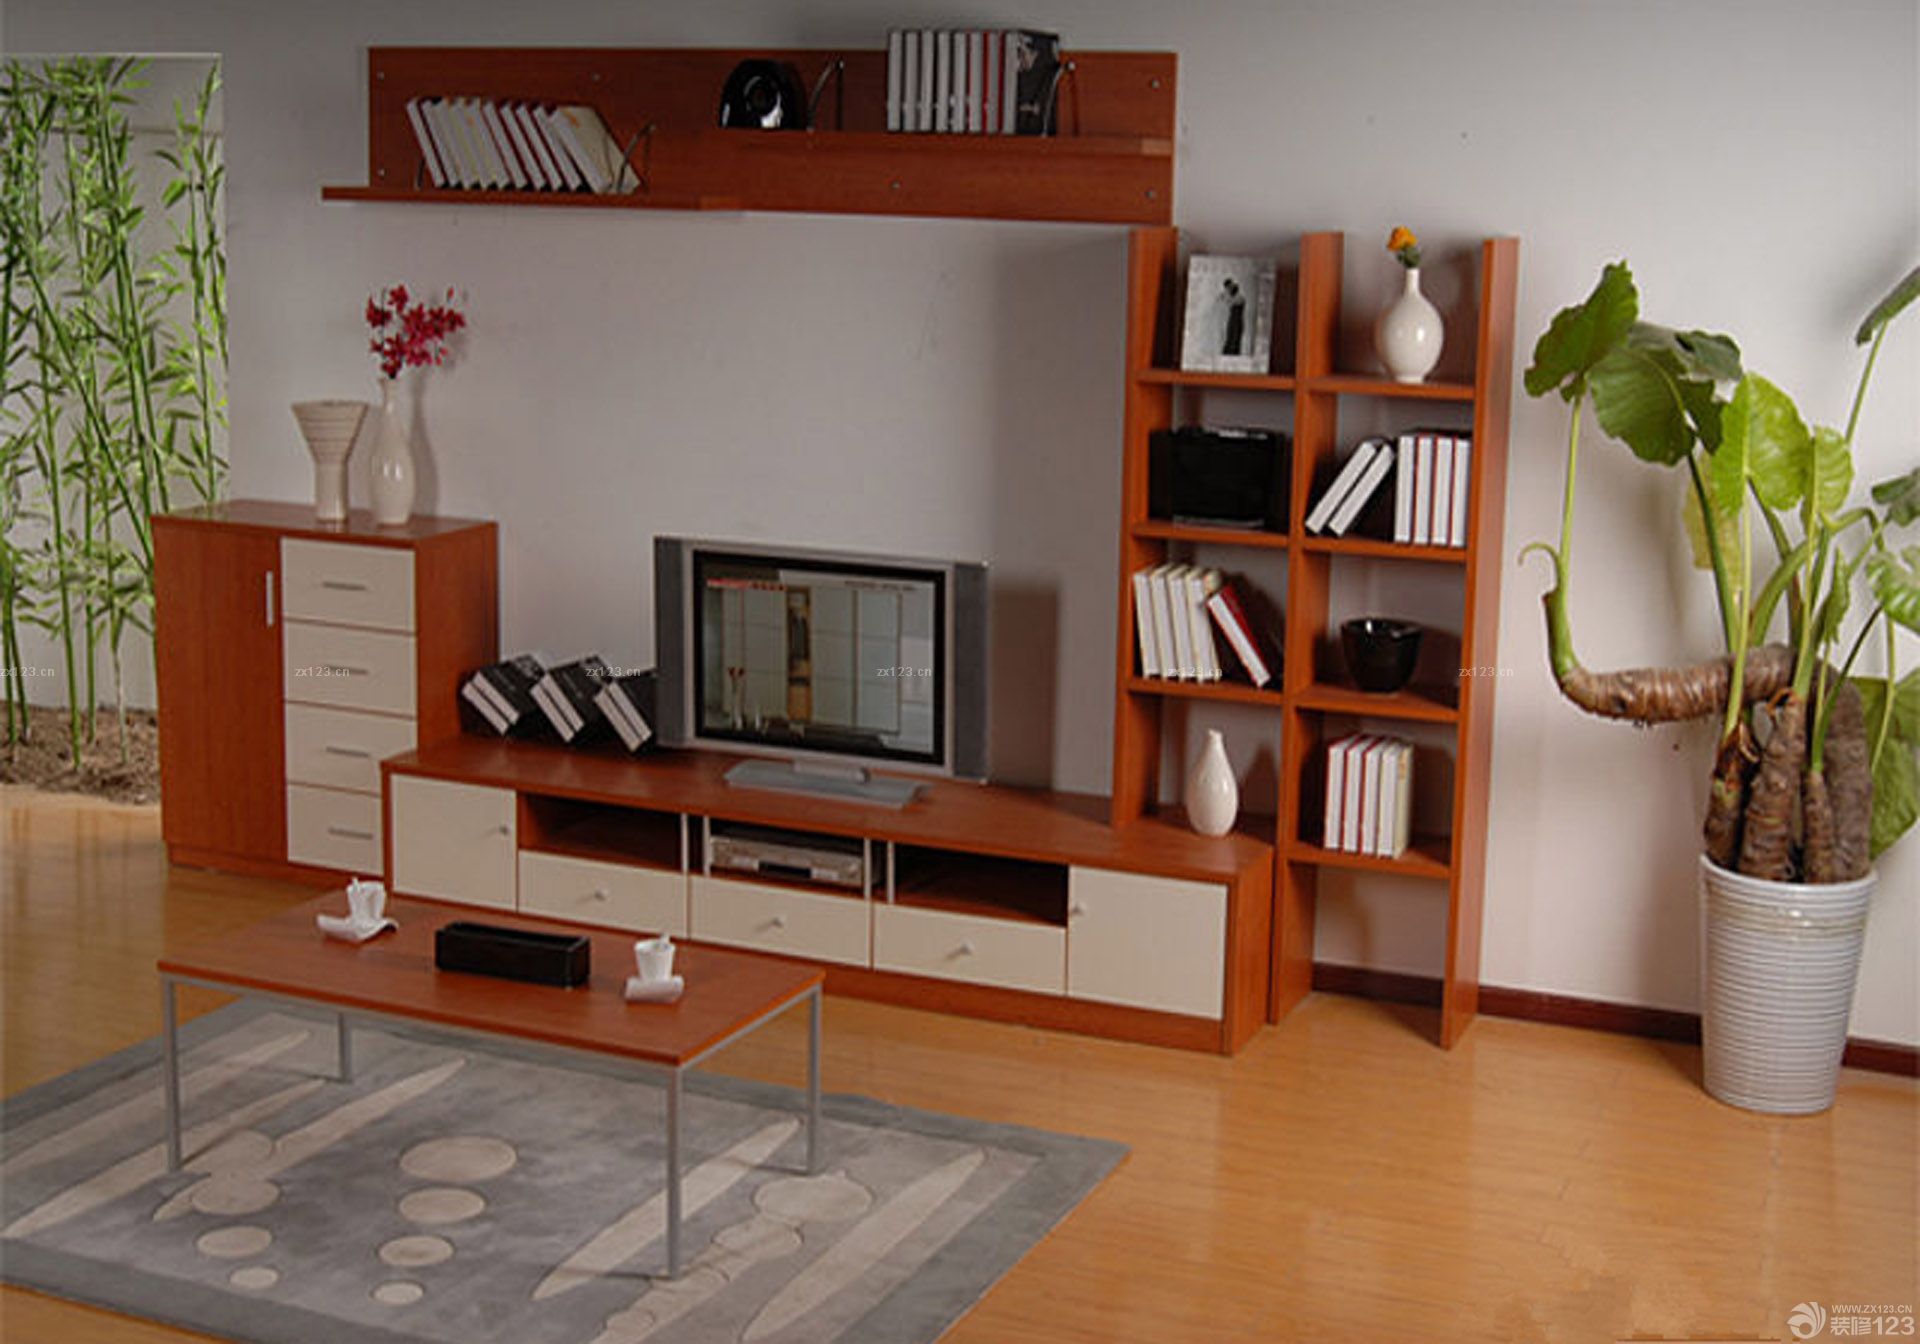 时尚简约的的电视柜效果图,兼具实用与装饰的效果